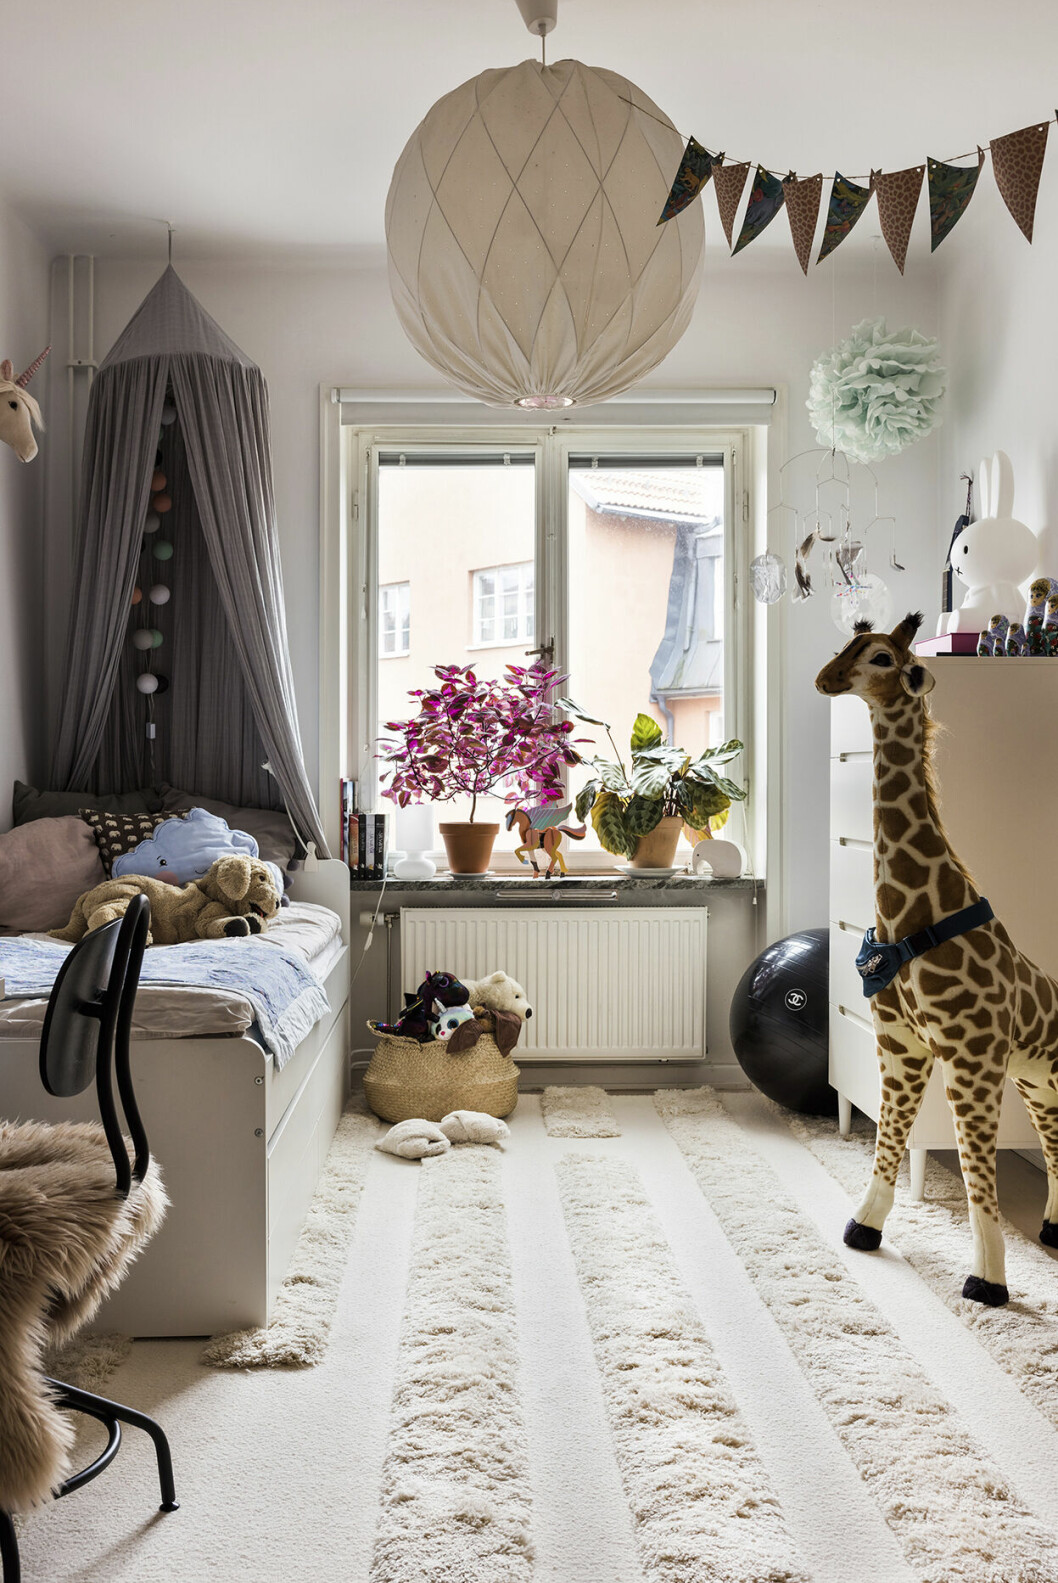 Dottern Sigrid har fått ett eget rum, en av favoritsakerna är en giraff som funnits med sedan hon var ett år gammal